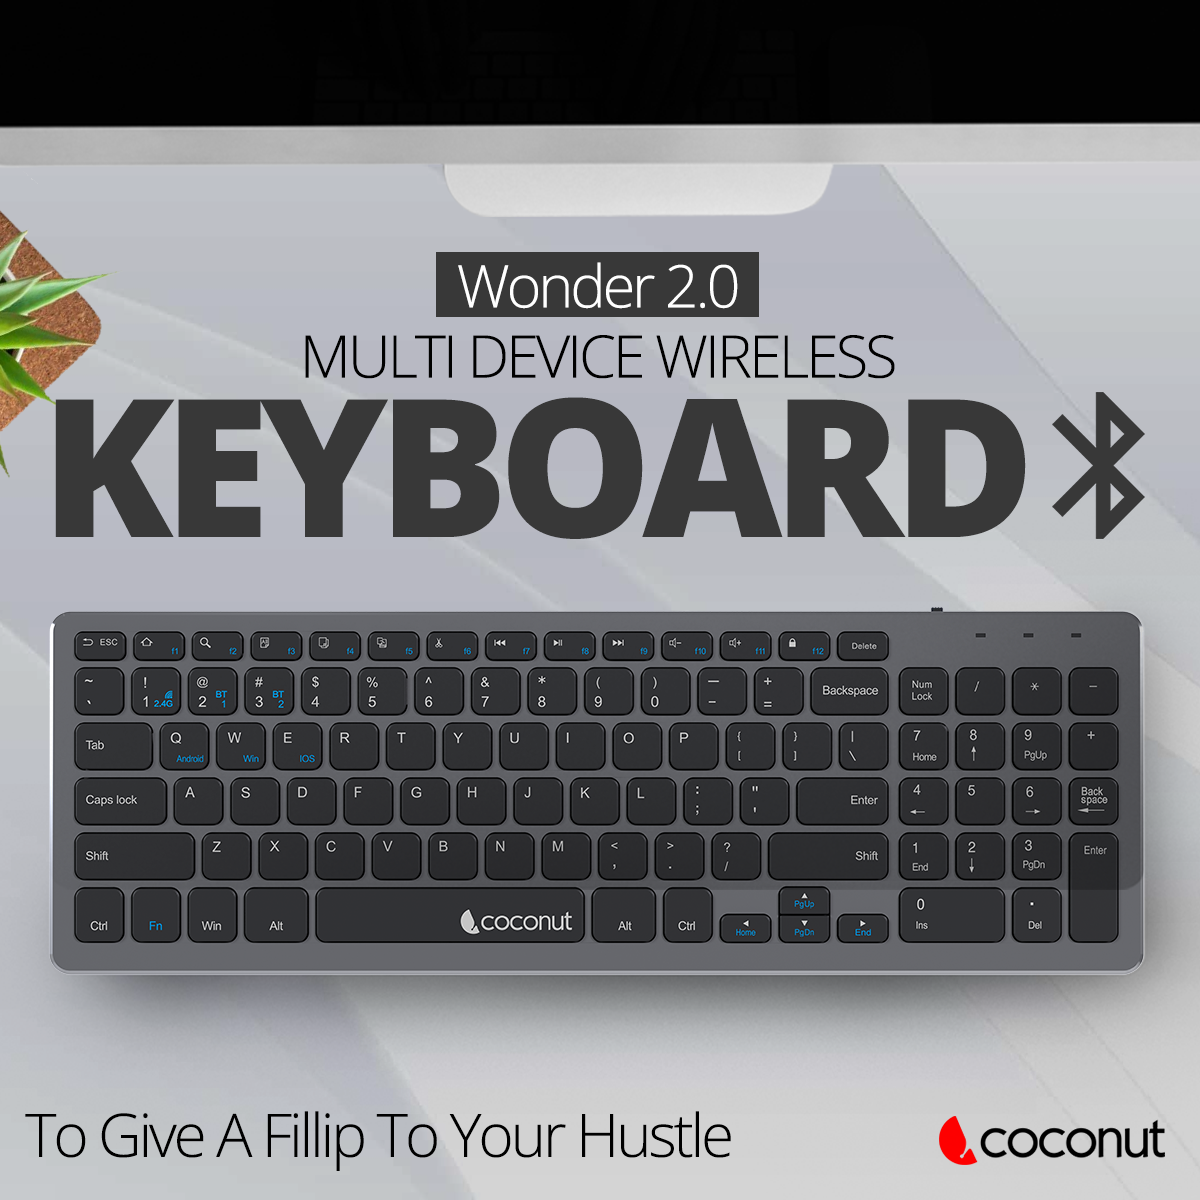 Wonder 2.0 Multi Device Wireless Keyboard